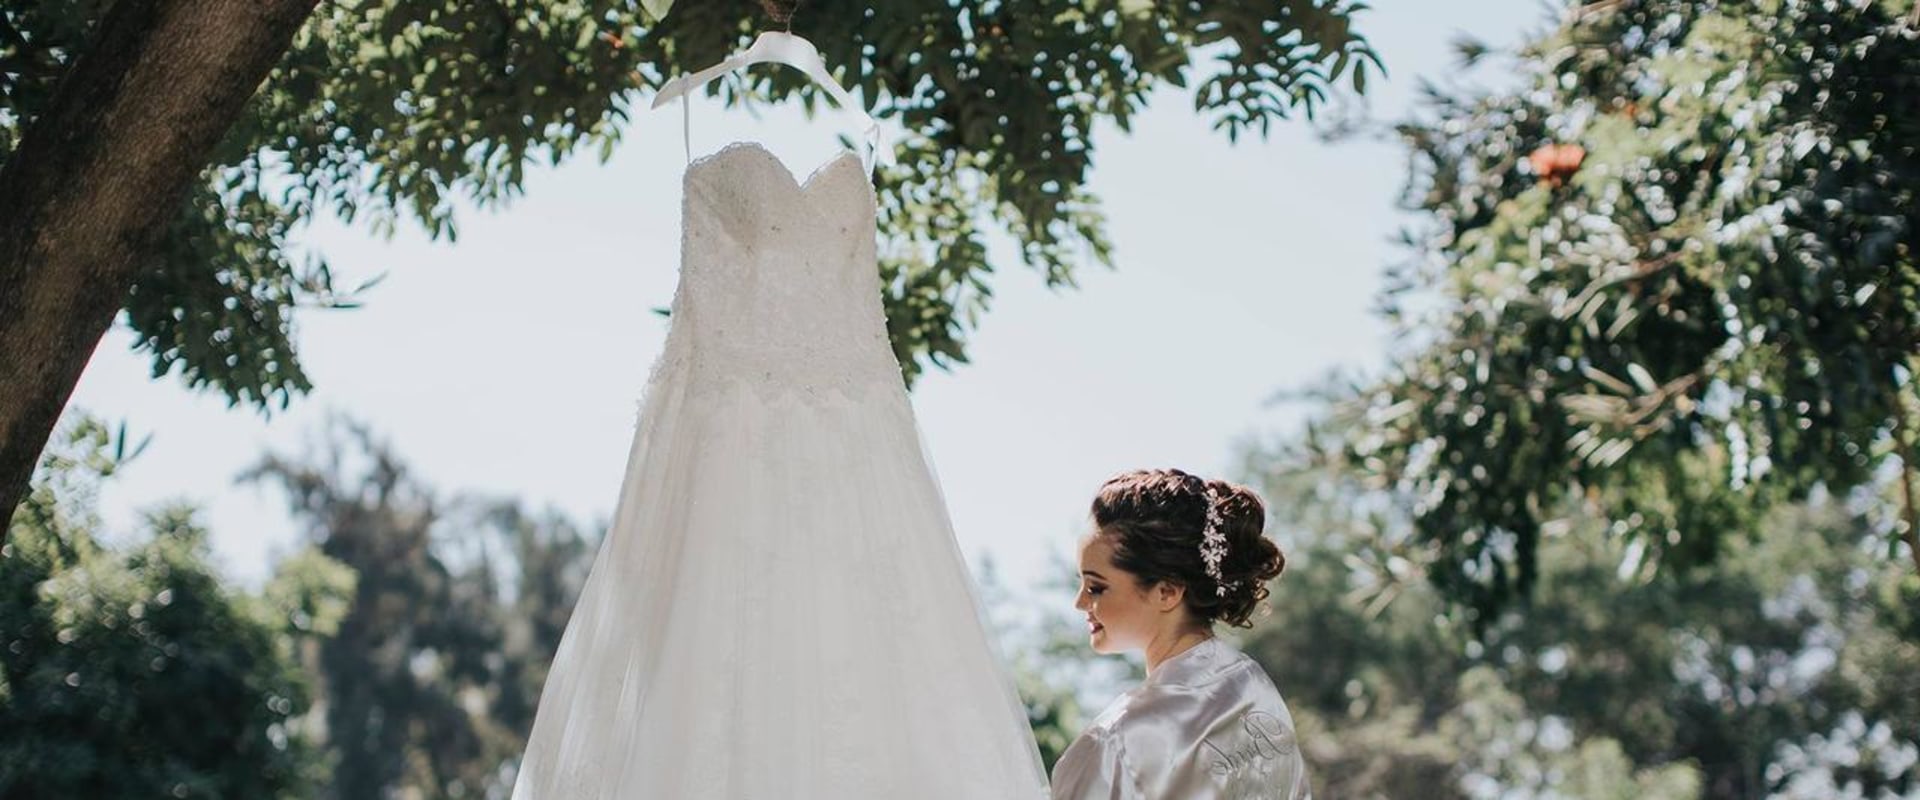 La novia se prepara para el gran día: una lista de fotos imprescindibles